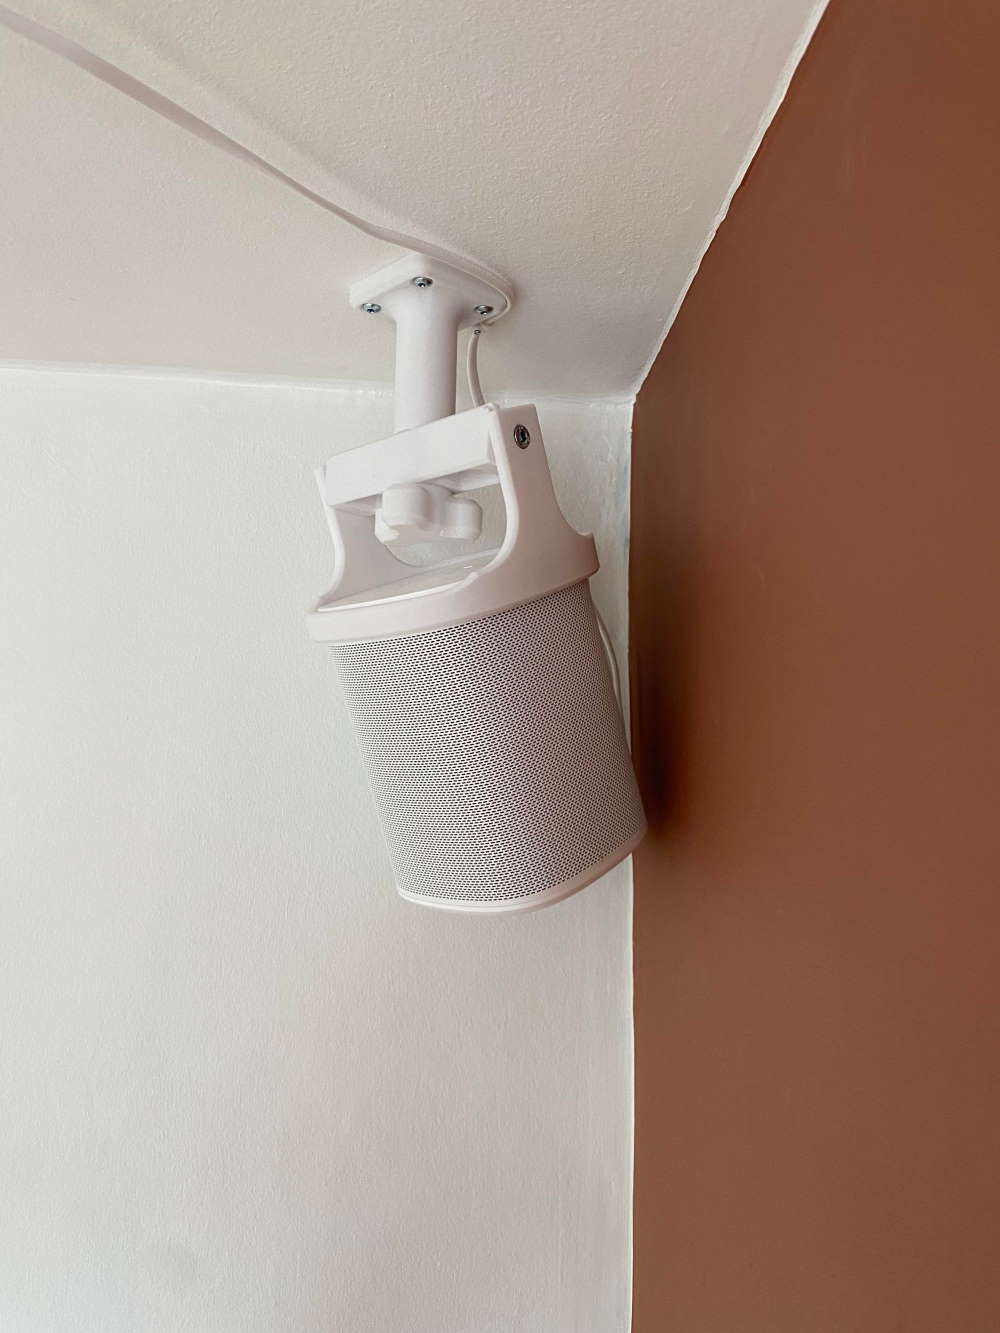 Sonos lofthæng beslag højtaler - denne laves i hvid til at hænge ned fra loftet så den Sonos højtaler er pæn placeret